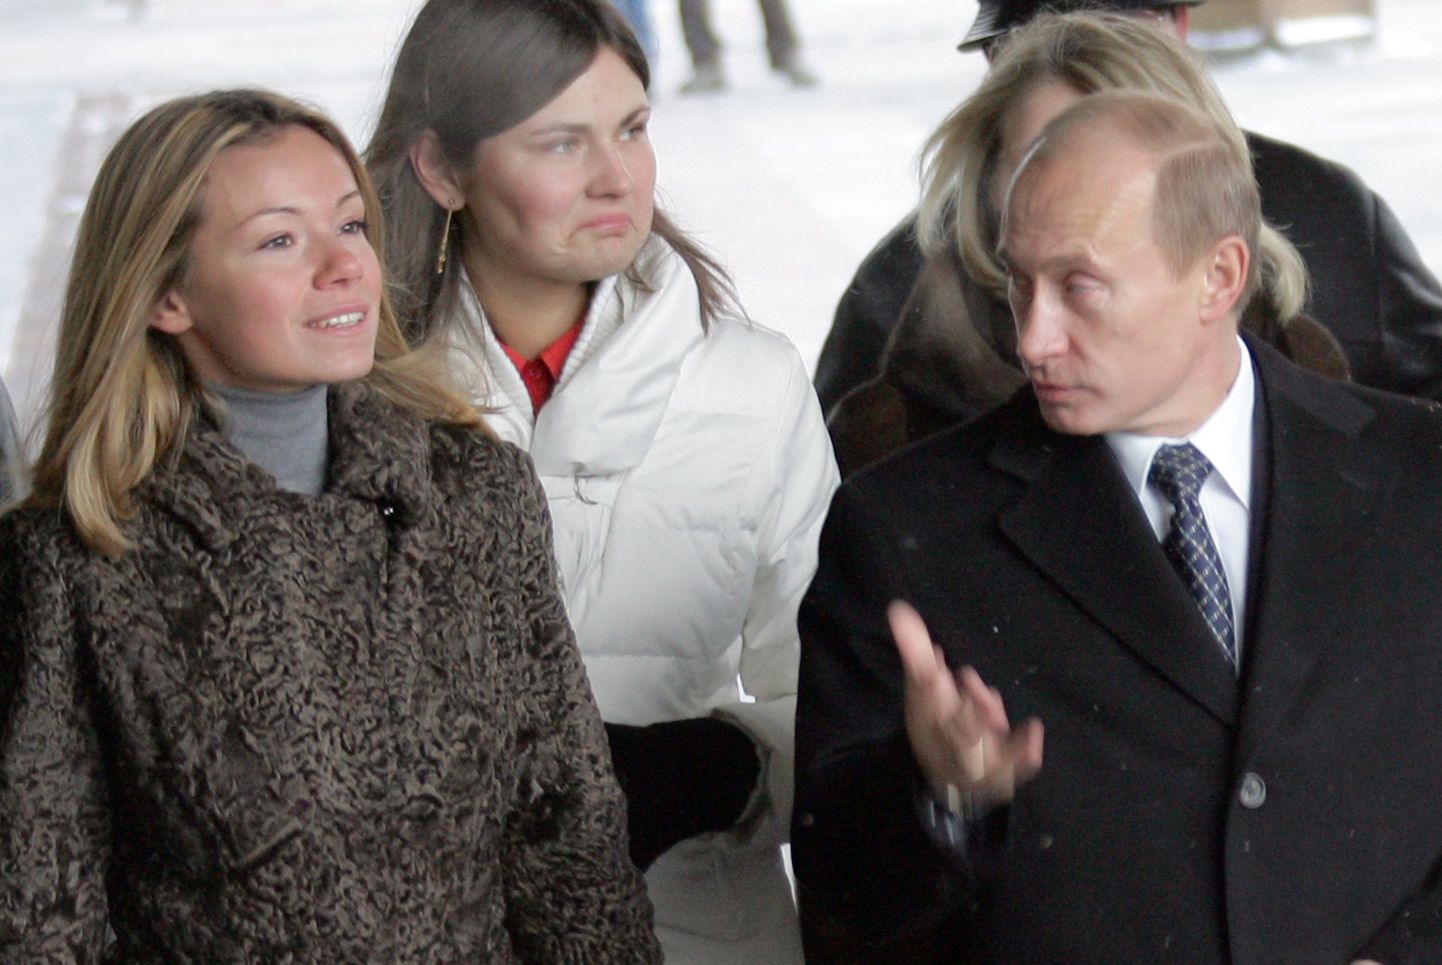 Venemaa president Vladimir Putin ja ta tütar Maria Putina 2. detsembril 2007 Moskvas sisenemas valimisjaokonda. Venemaal toimusid siis duuma valimised